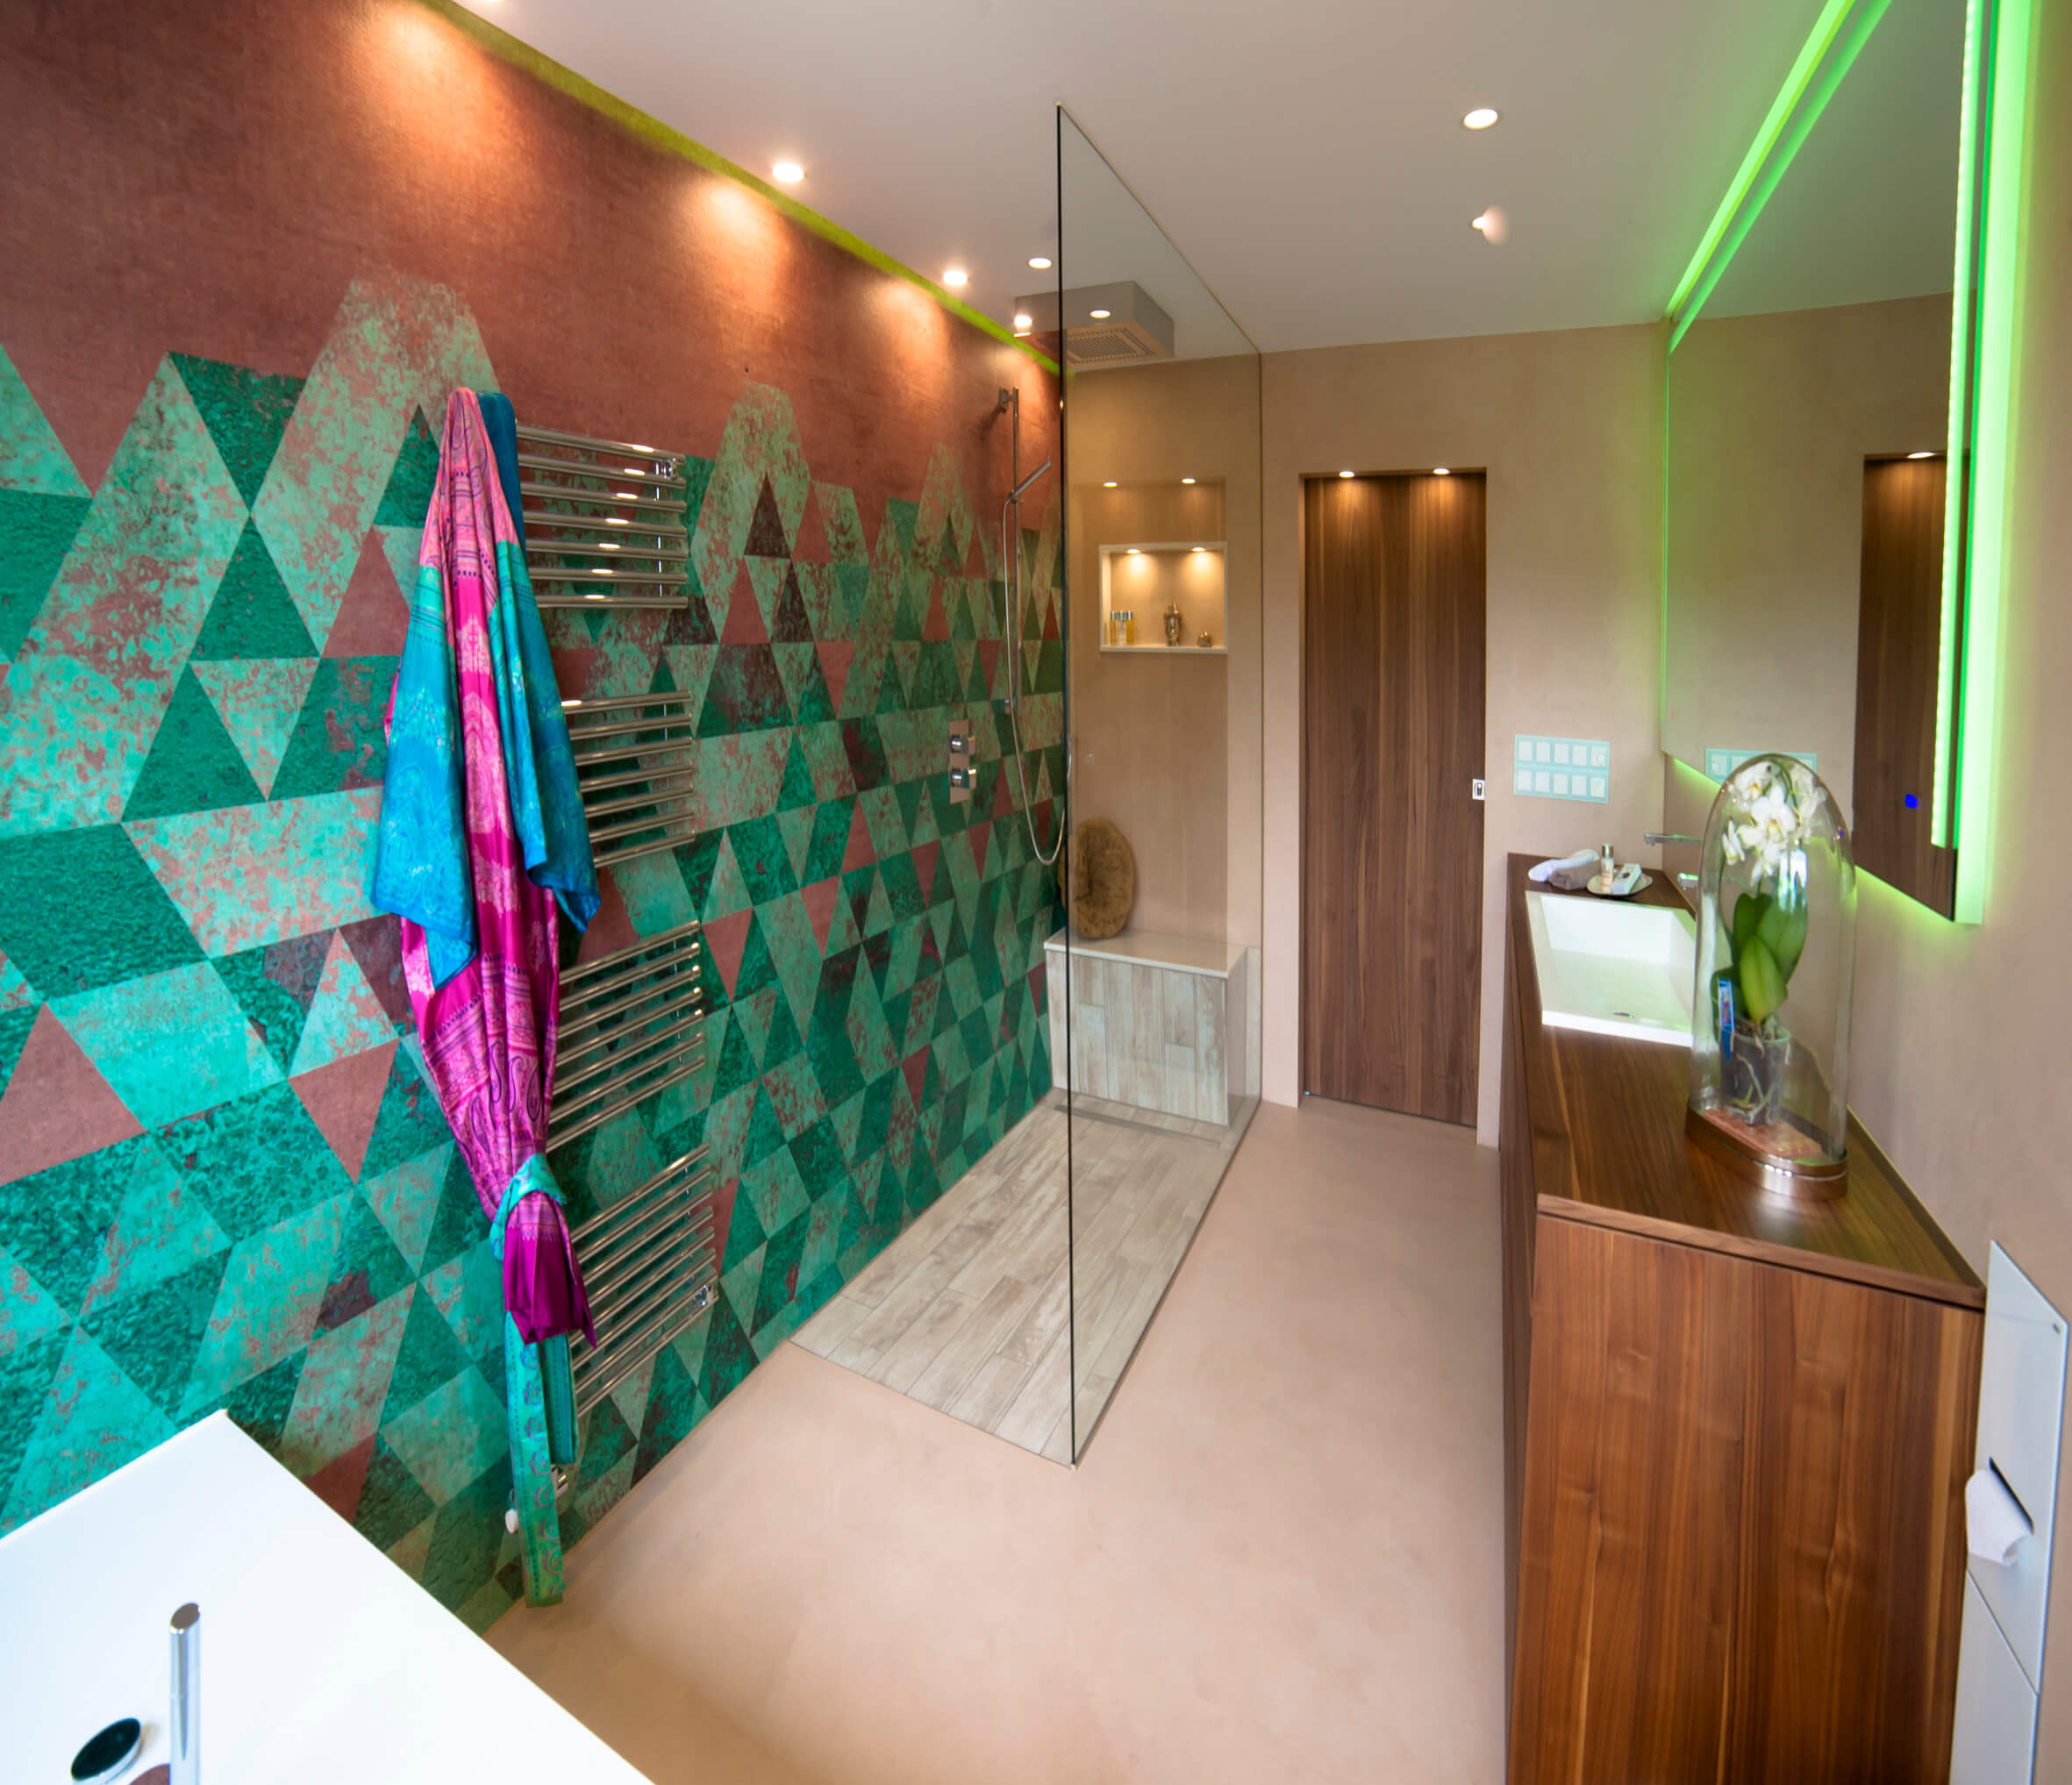 Kleines Bad mit bodenebener Dusche und mediterran inspirierter Wall and Deco Tapete